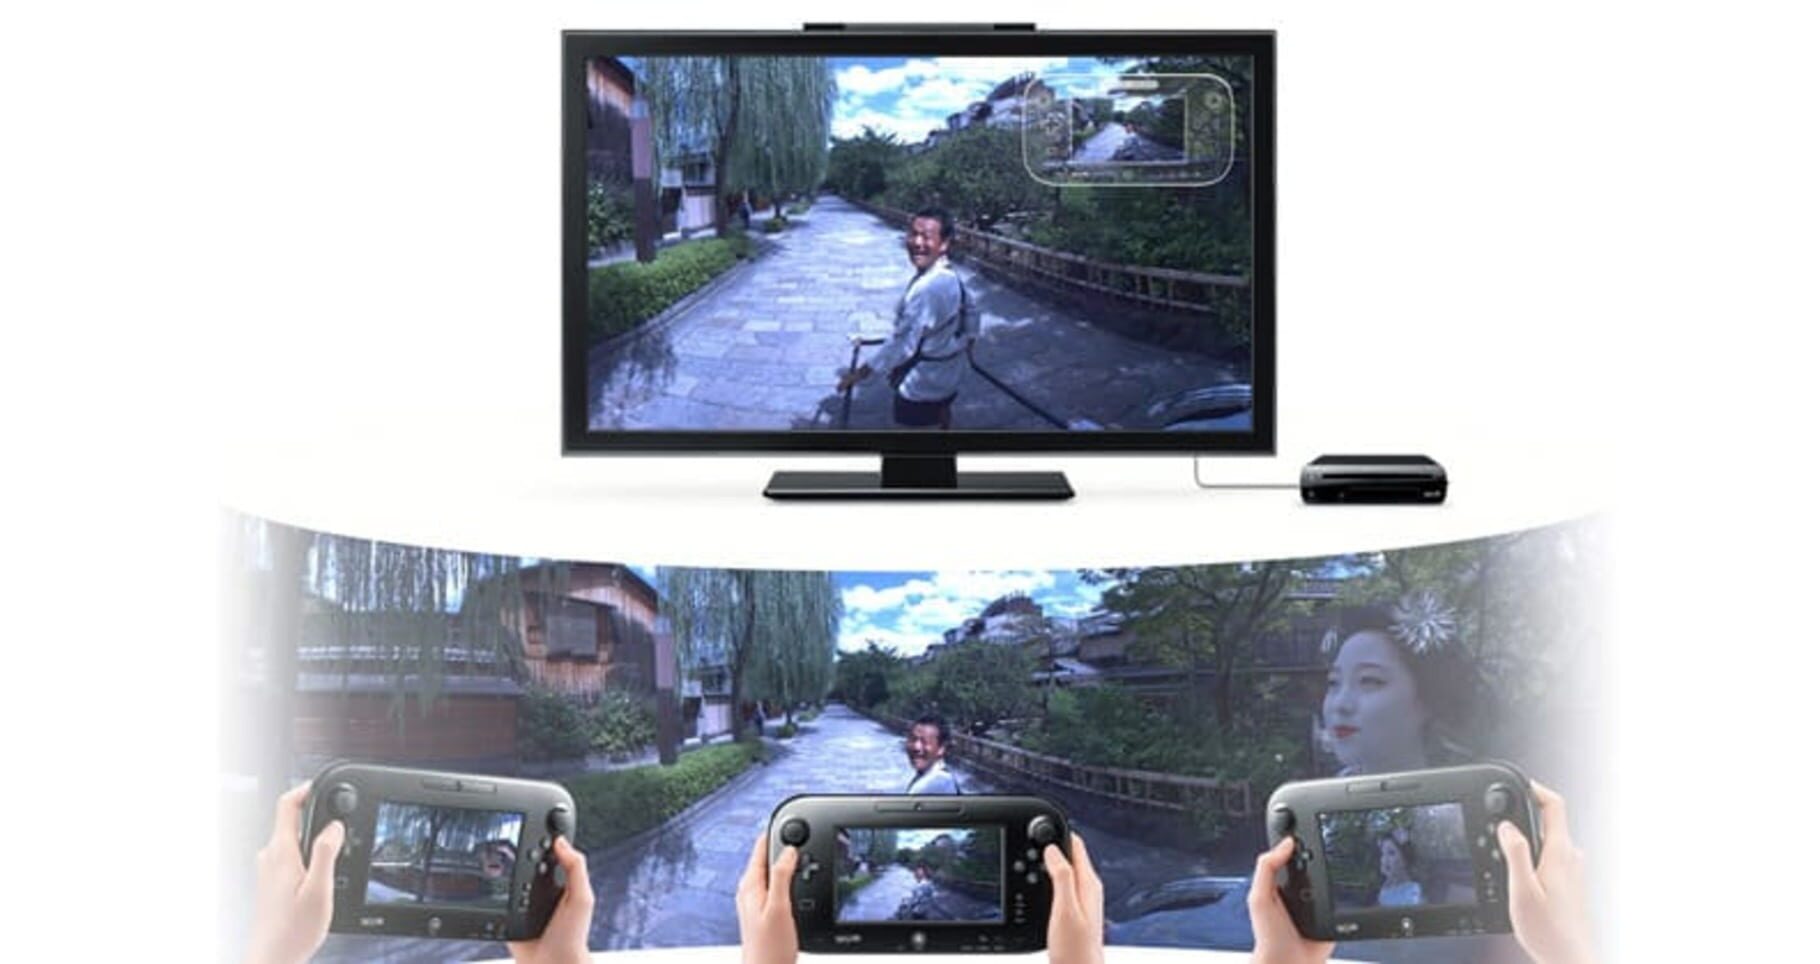 Captura de pantalla - Wii U Panorama View